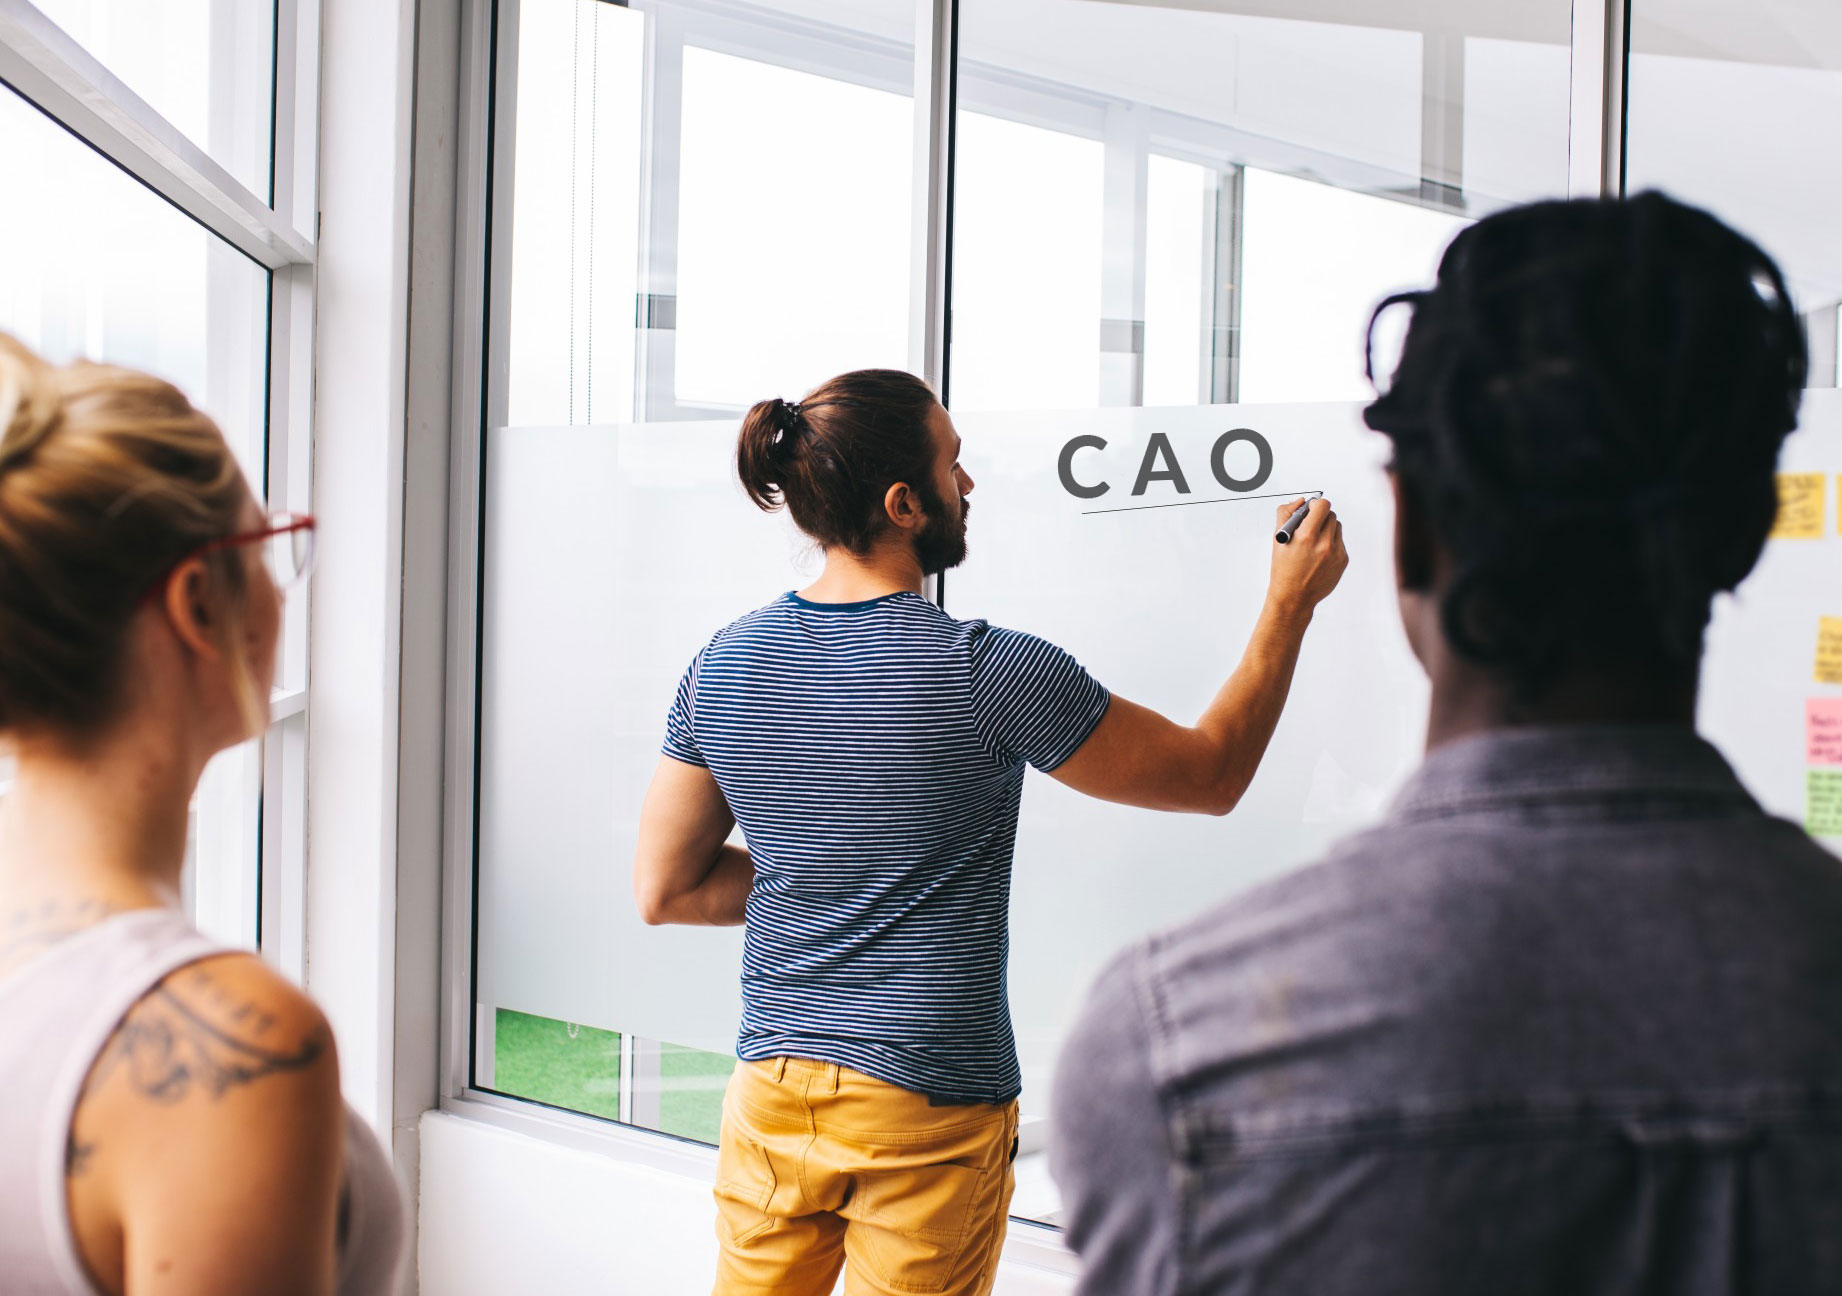 Een man schrijft de het woord CAO op een bord terwijl andere mensen naar hem kijken